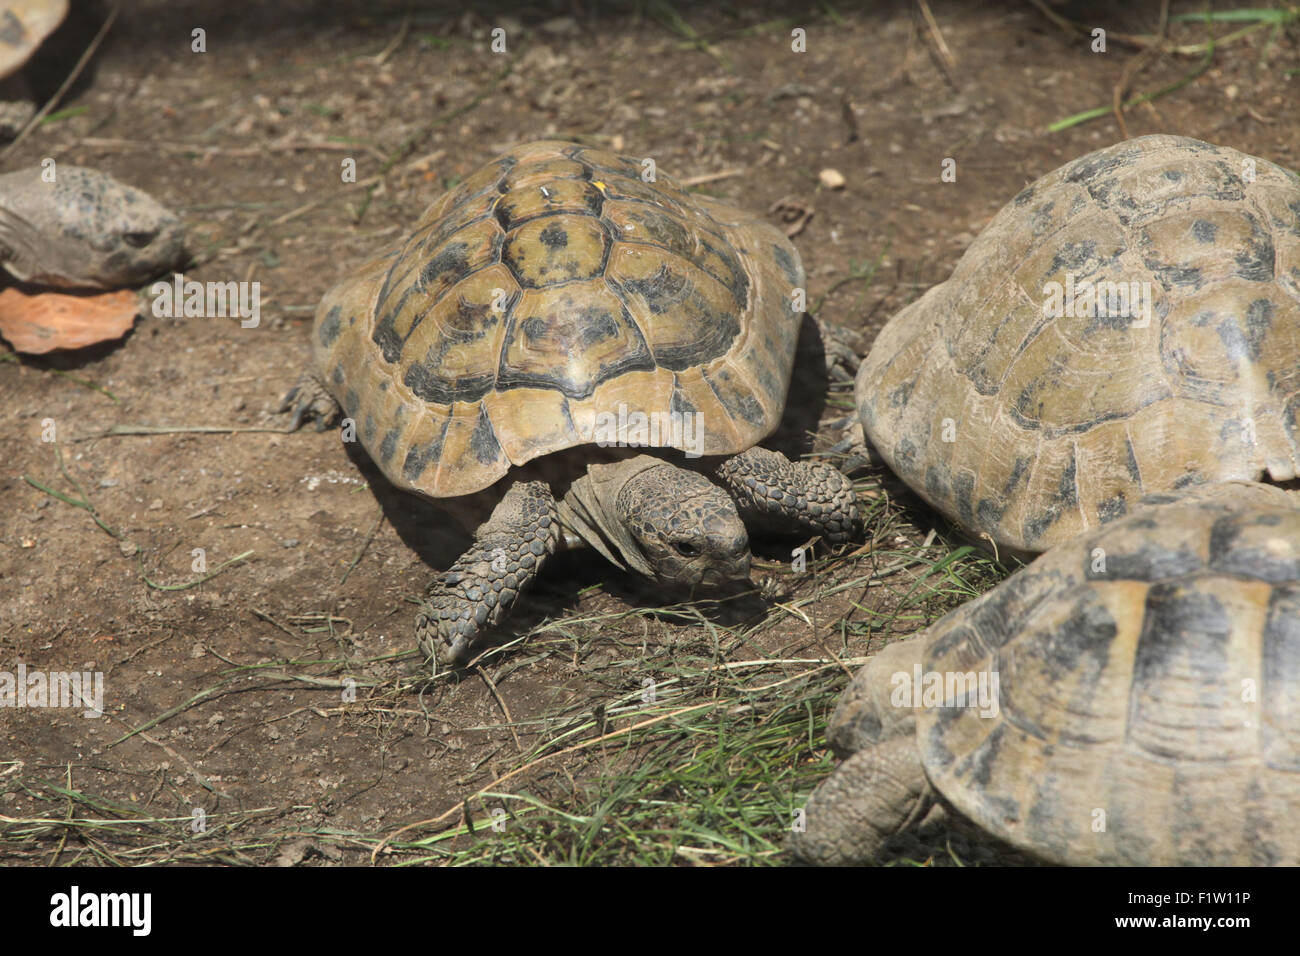 Marginated tortoise (Testudo marginata) at Plzen Zoo in West Bohemia, Czech Republic. Stock Photo